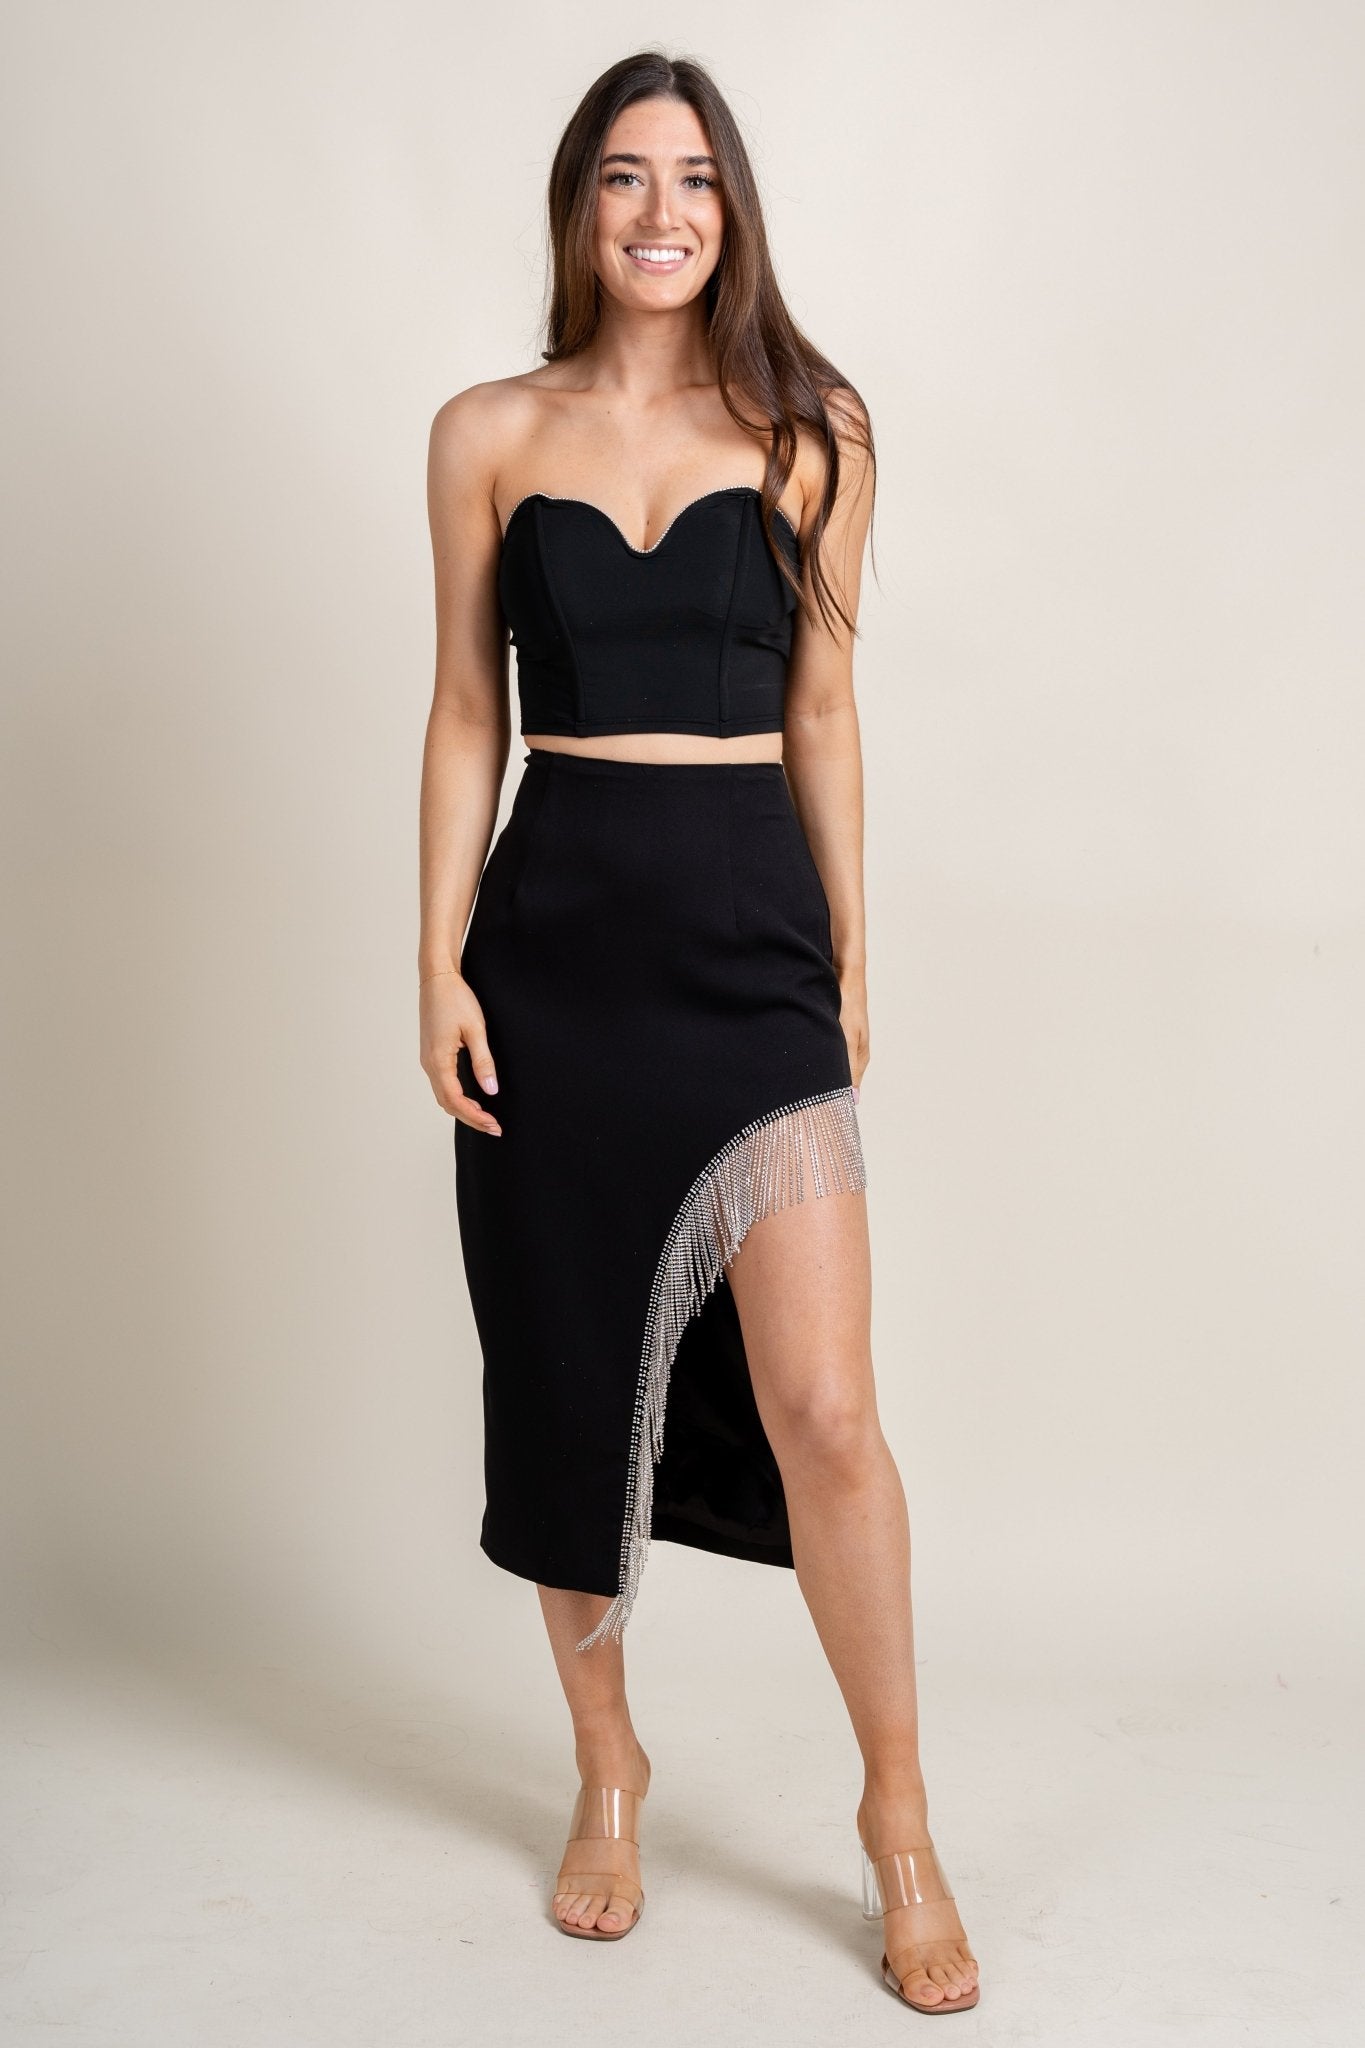 Fringe rhinestone skirt black | Lush Fashion Lounge: boutique fashion skirts, affordable boutique skirts, cute affordable skirts